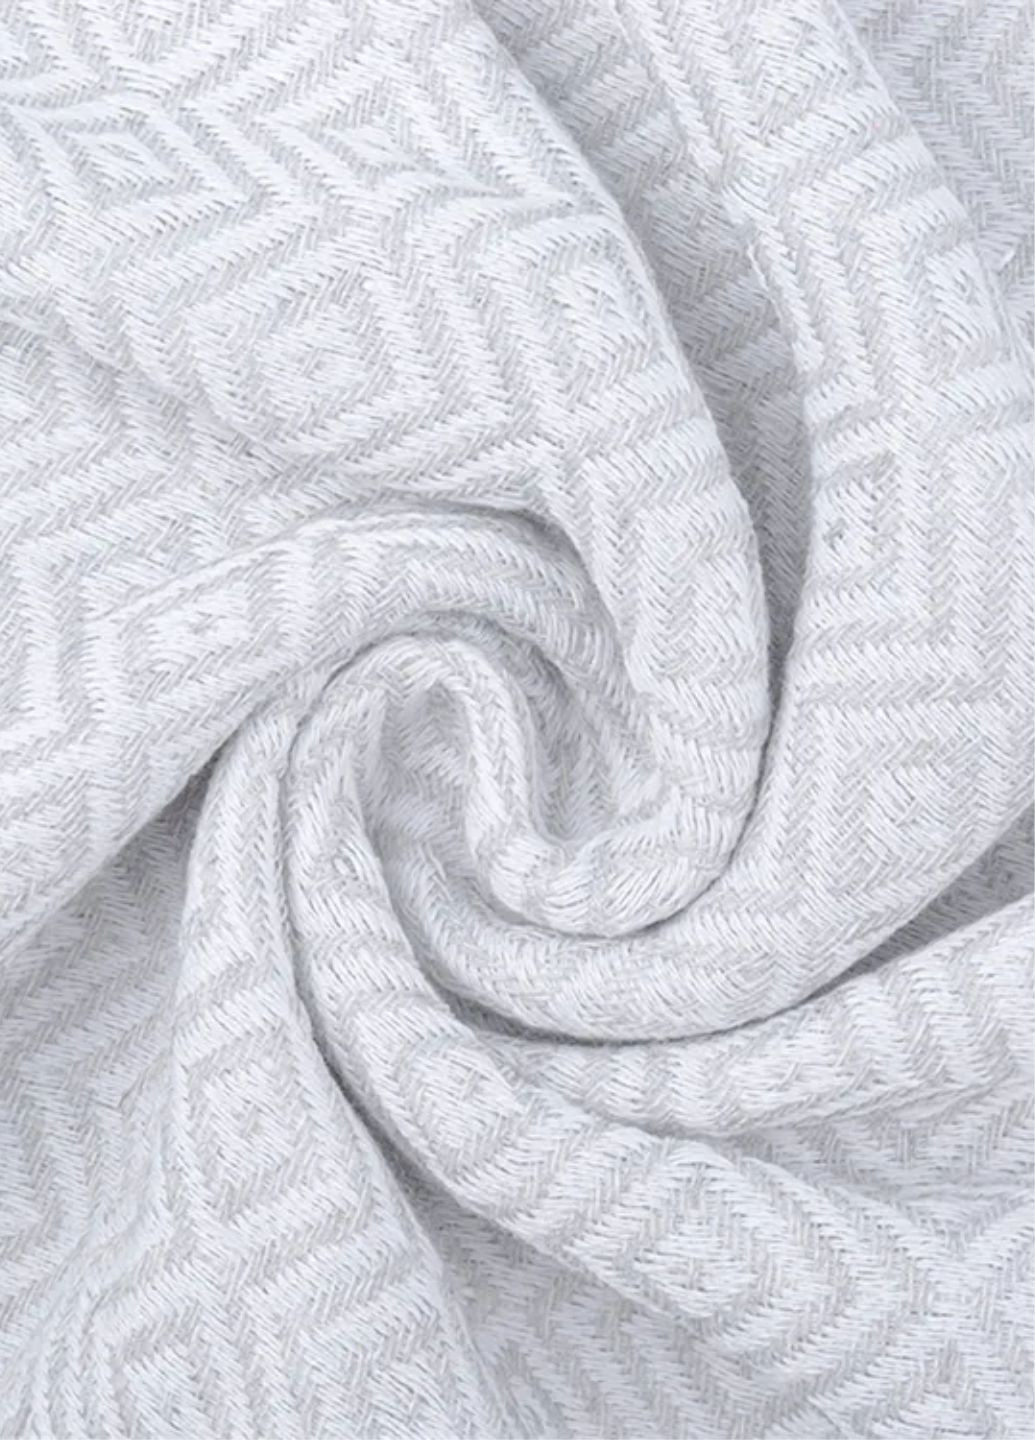 Lovely Svi турецкие пляжные полотенца - пештемаль - xхl (100 на 180 см) - хлопок - серый геометрический серый производство - Китай